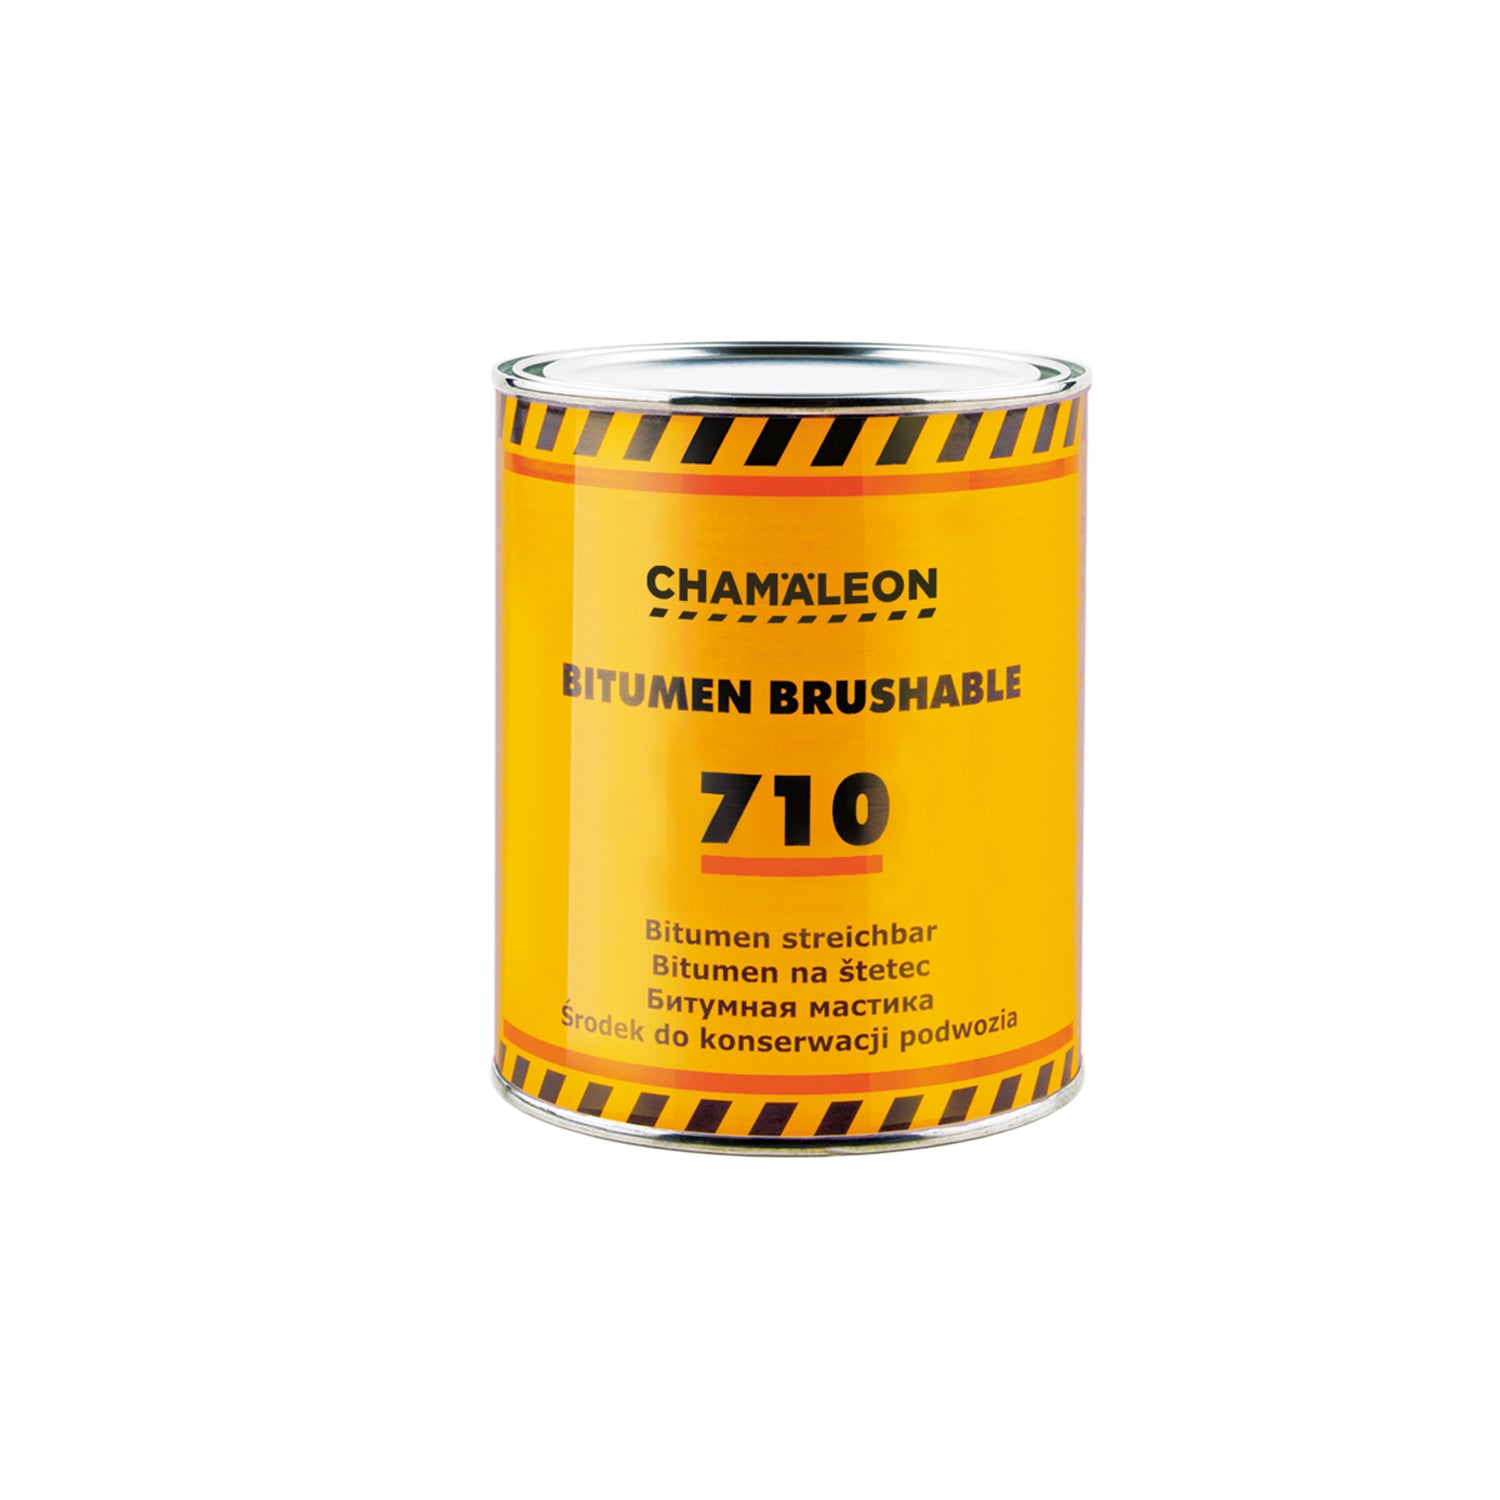 CHAMALEON Bitumen Brushable 710